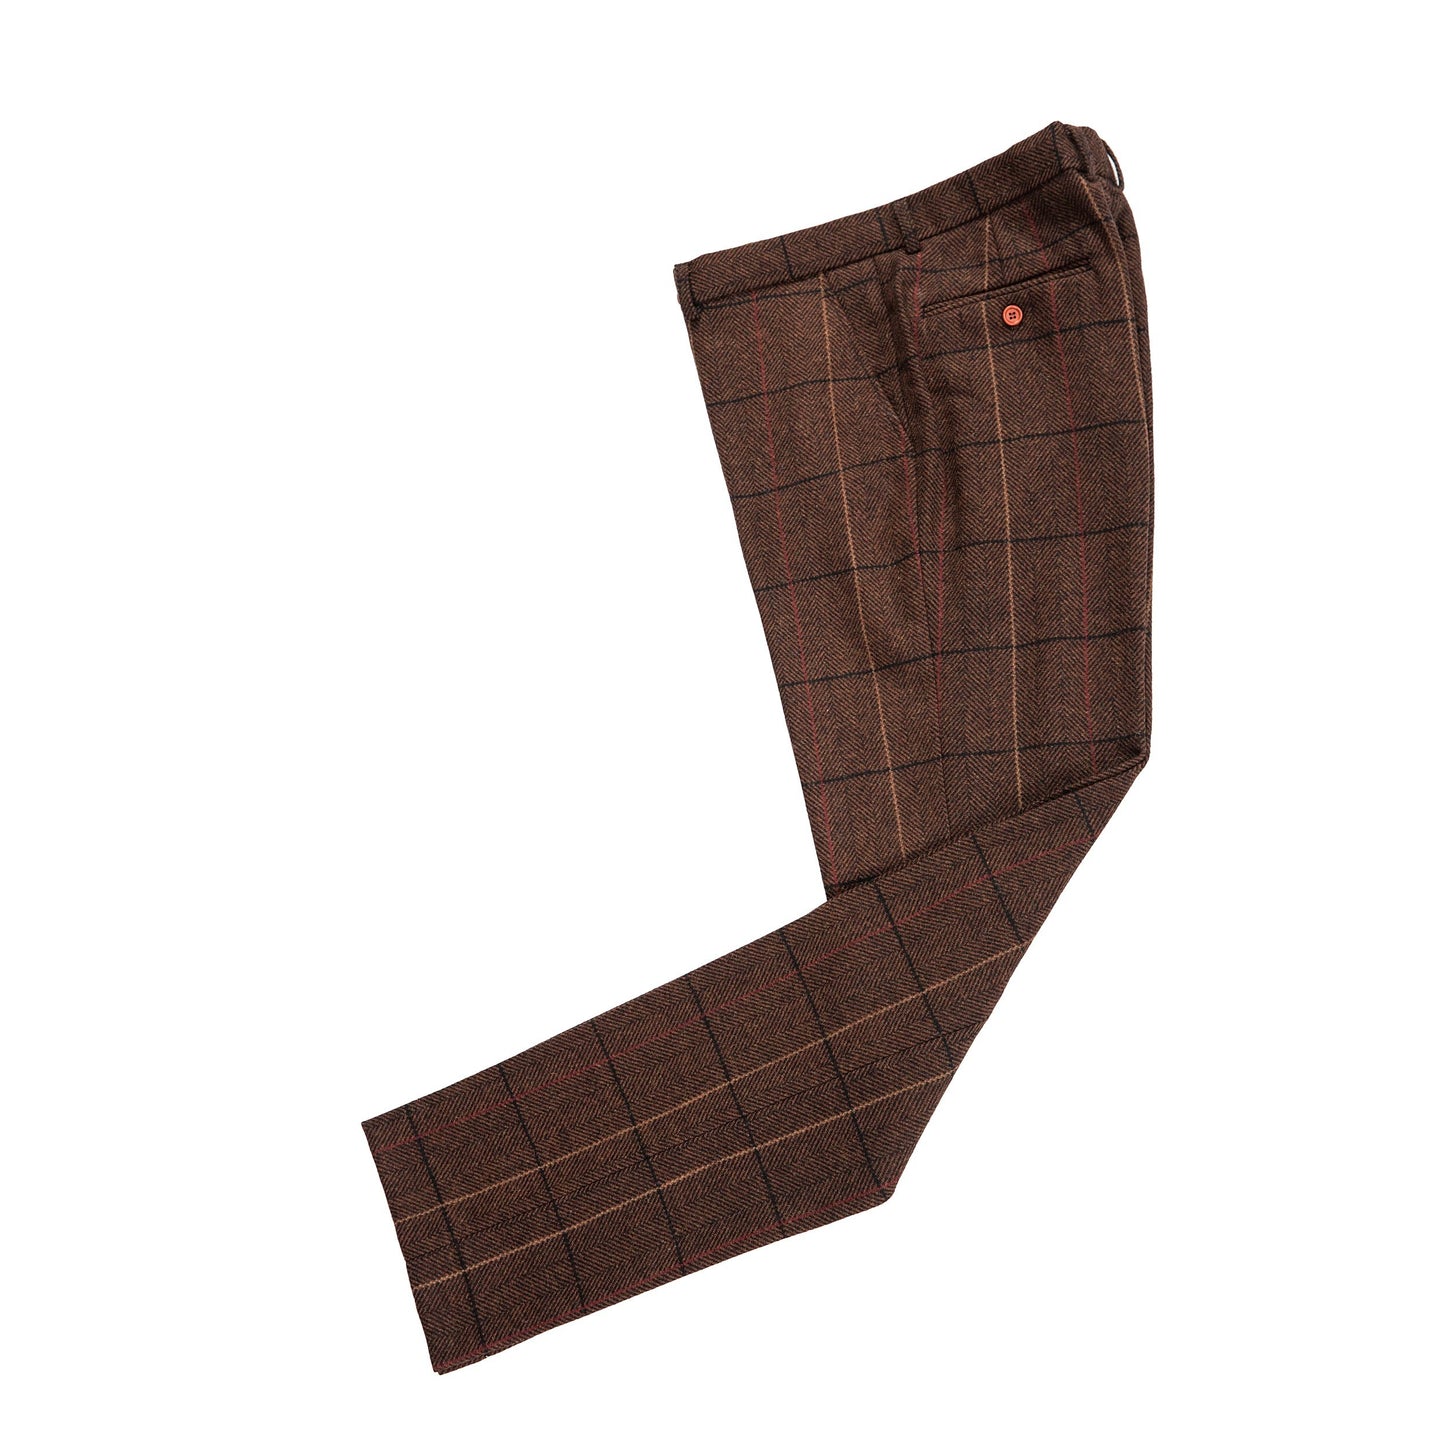 Brown Overcheck Herringbone Tweed Suit